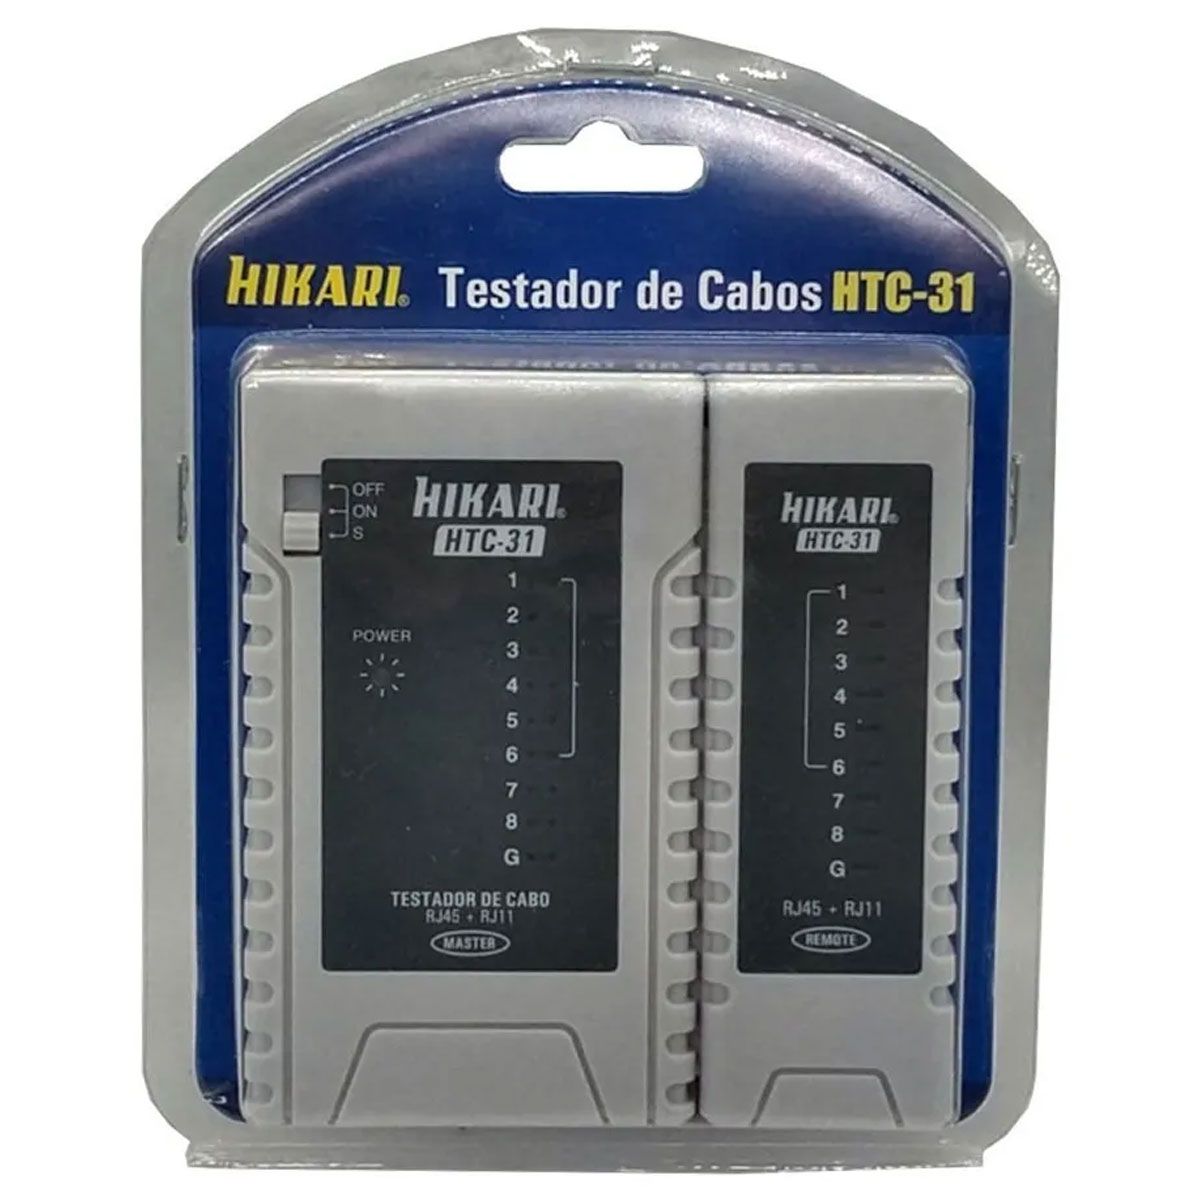 Testador de cabos RJ45 e RJ11- Hikari HTC-31